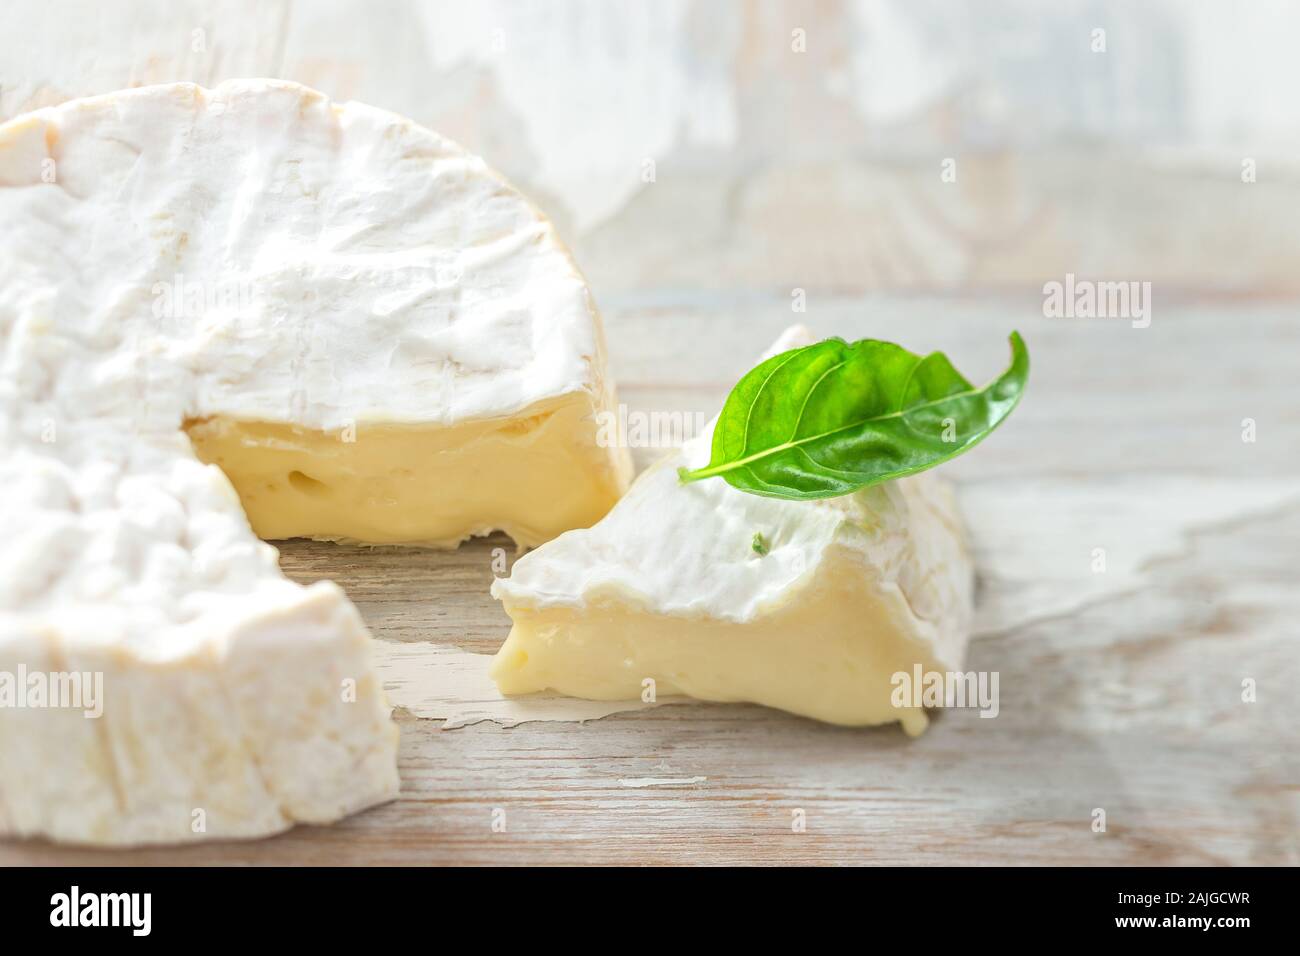 Camembert cheese Stock Photo